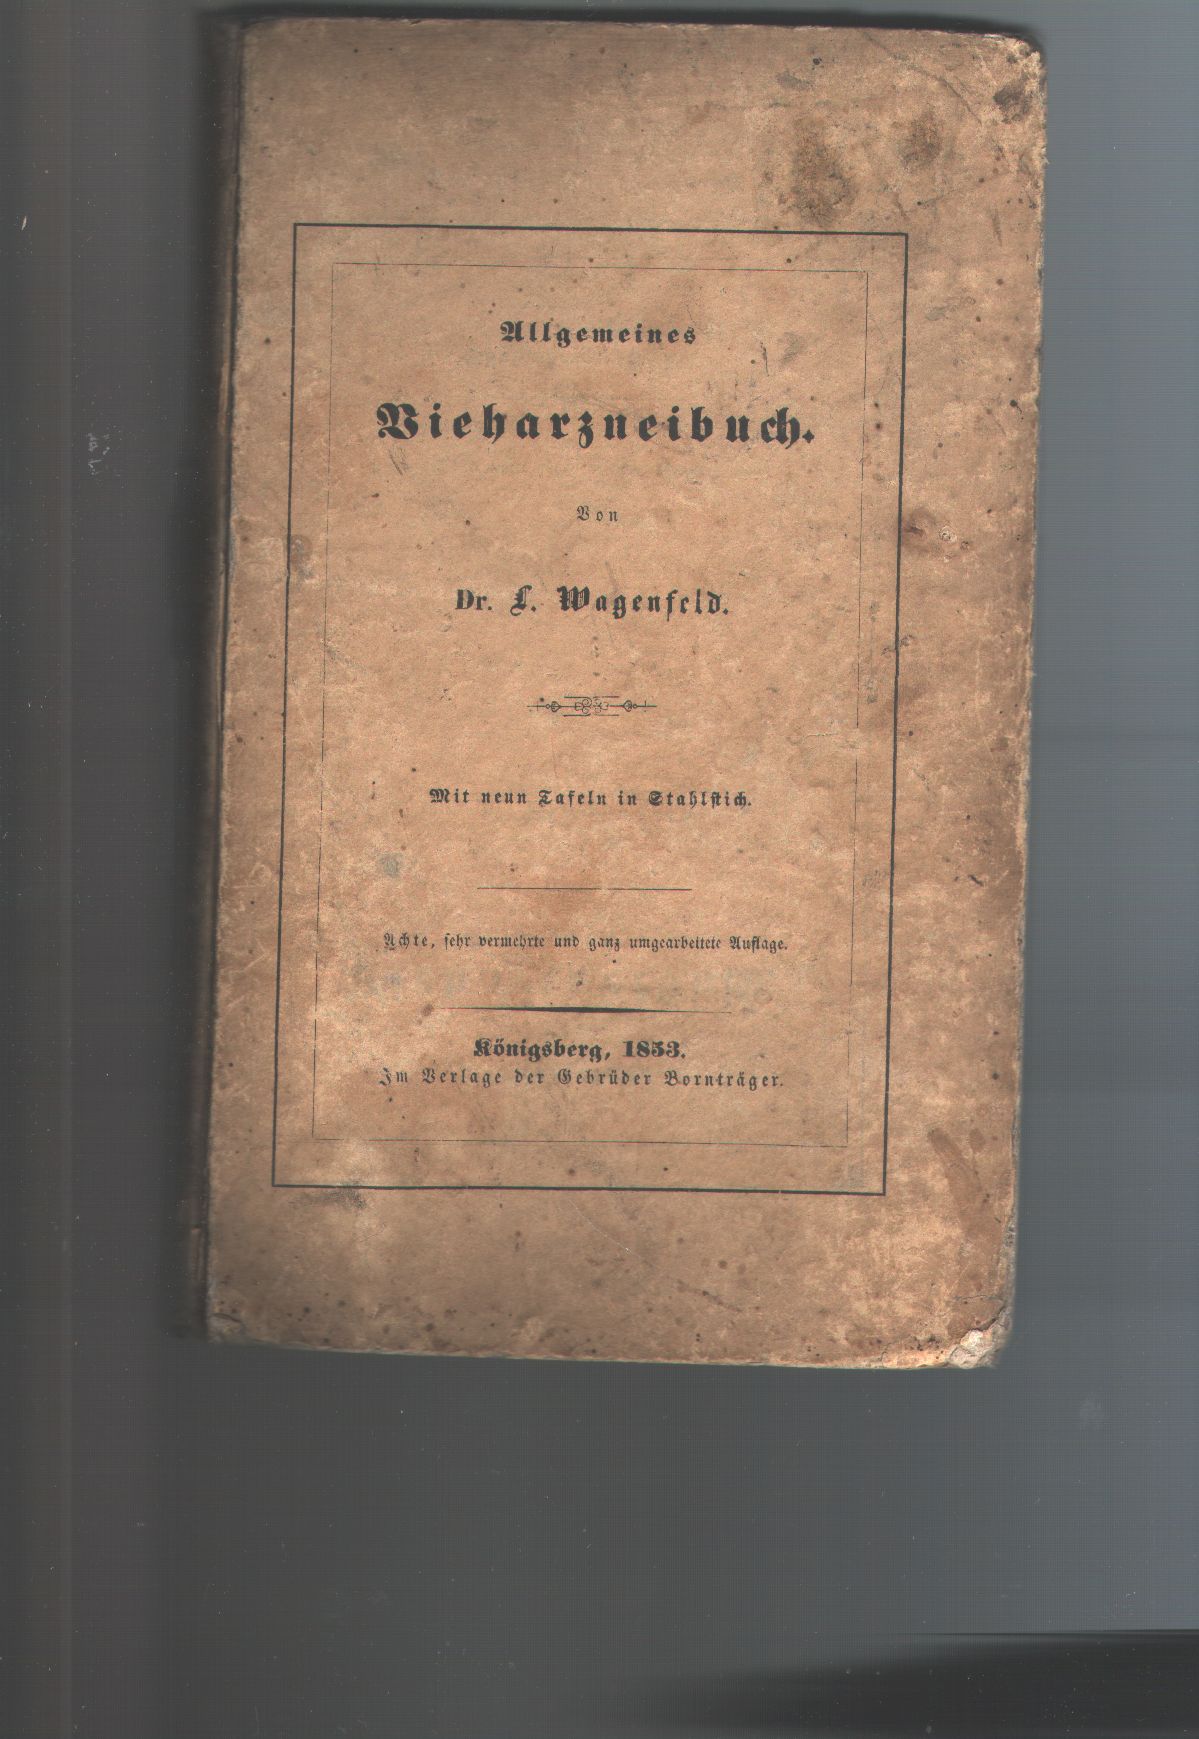 Dr. L. Wagenfeld  Allgemeines Vieharzneibuch 